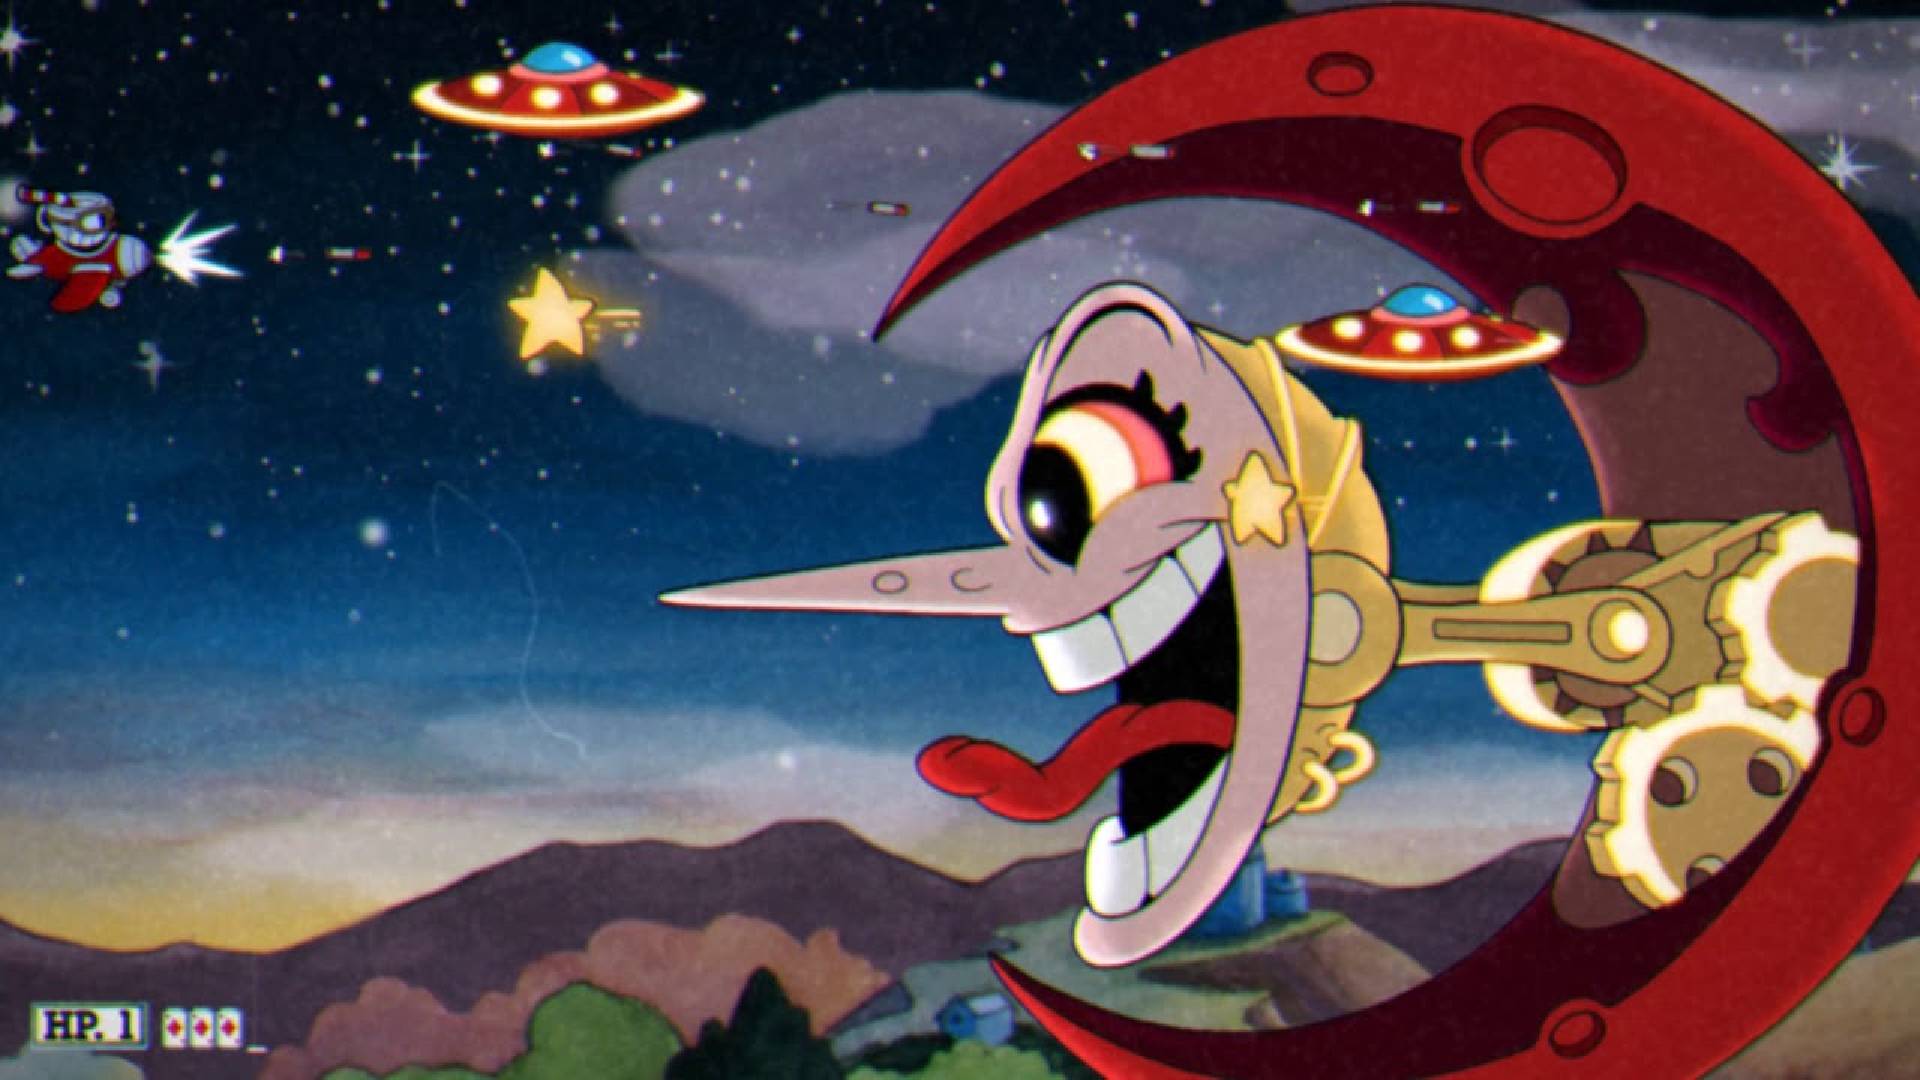 컵헤드 보스: 비행기에 탄 작은 빨간 컵맨이 달 모양의 커다란 기계 아가씨를 공격합니다.